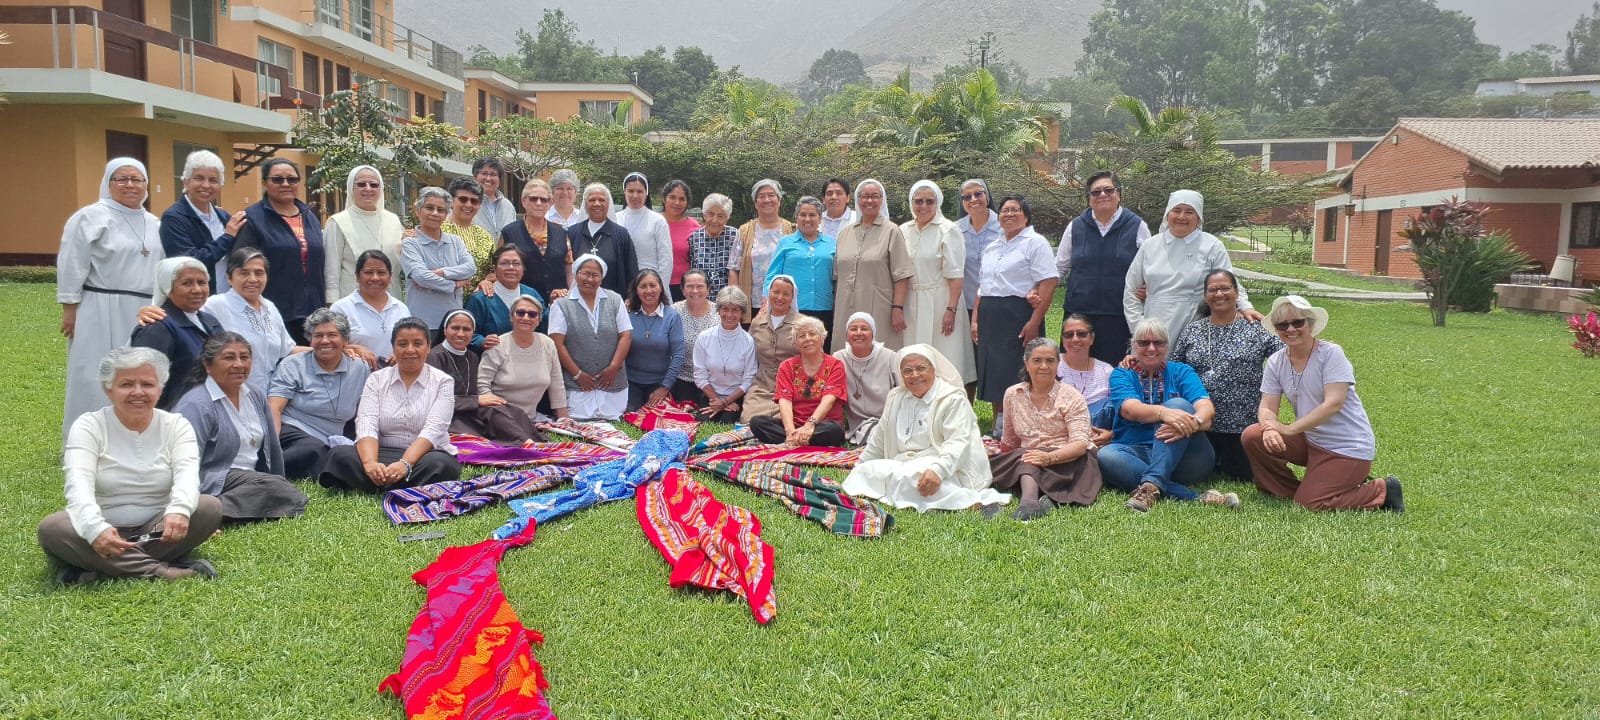 Las hermanas católicas pudieron compartir su retiro espiritual en Lima, gracias a gestión de la Conferencia de Religiosas y Religiosos del Perú y a la Fundación Conrad N. Hilton. (Foto: cortesía de Inés Menocal)